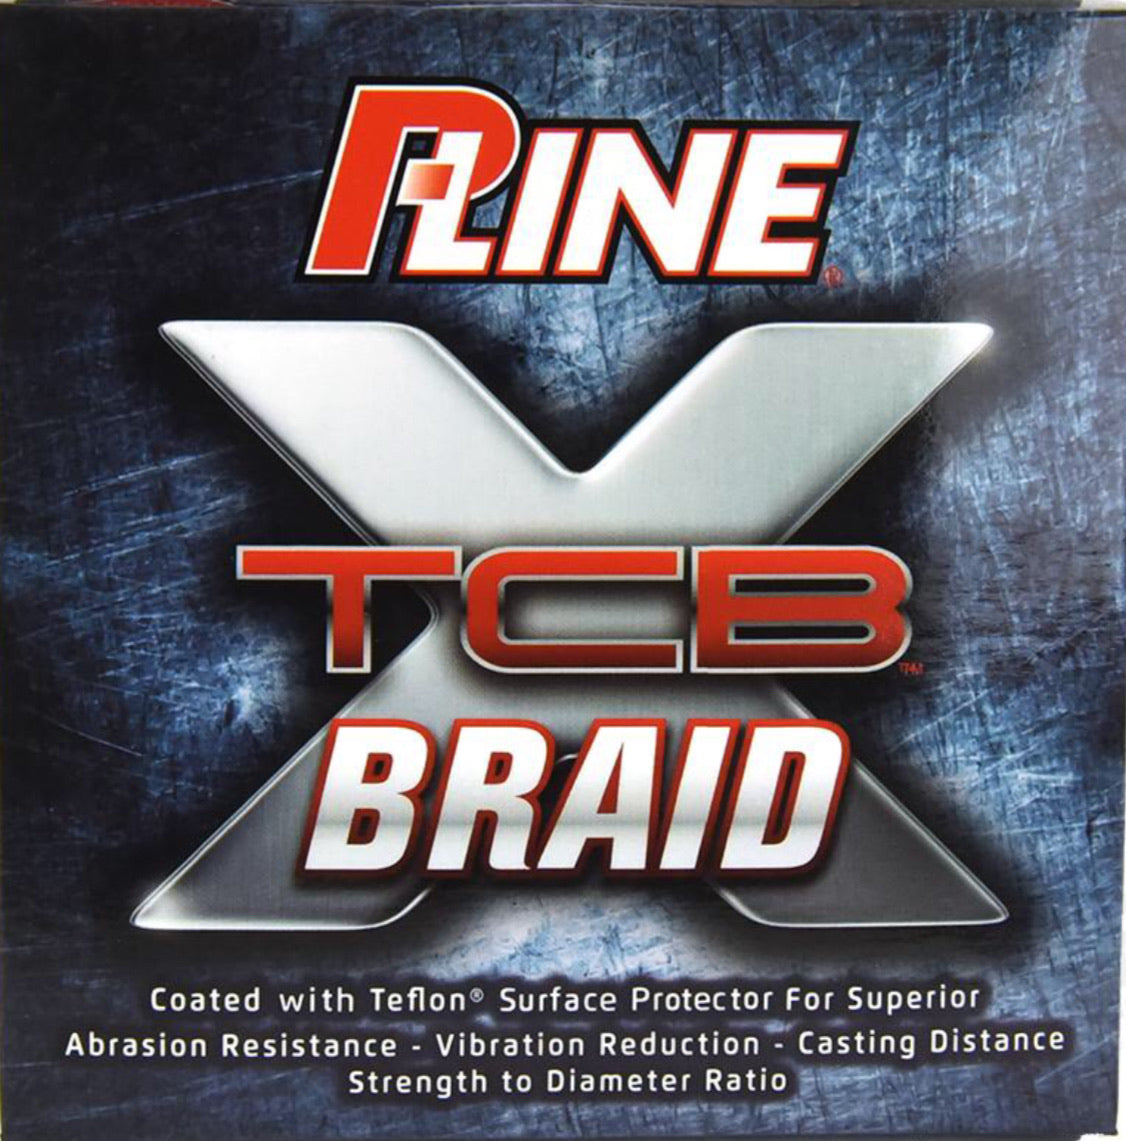 P-Line TCBX Braid - LOTWSHQ